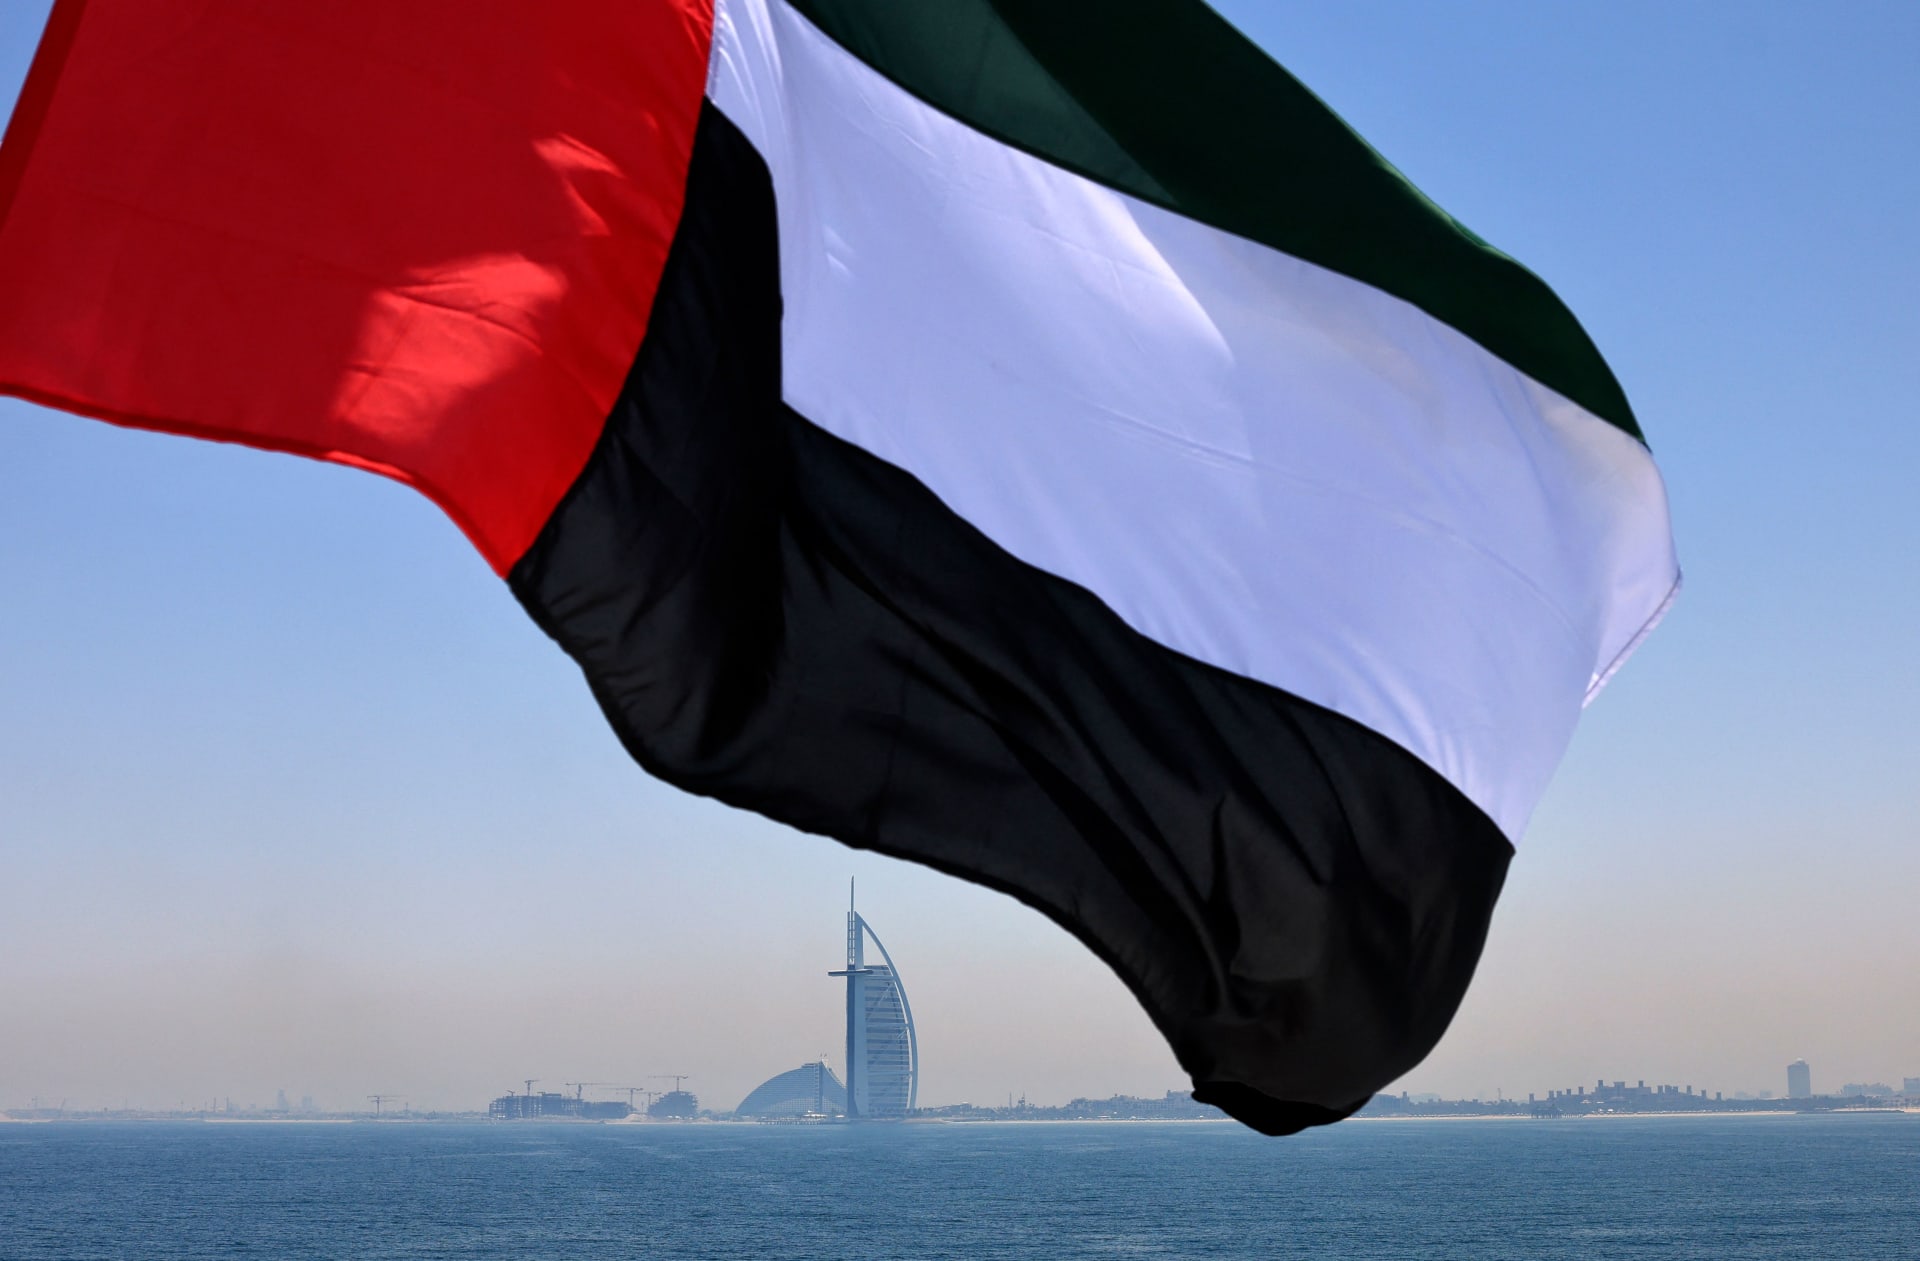  سفارة الإمارات في واشنطن تصدر بيانا بشأن قضية محامي جمال خاشقجي السابق